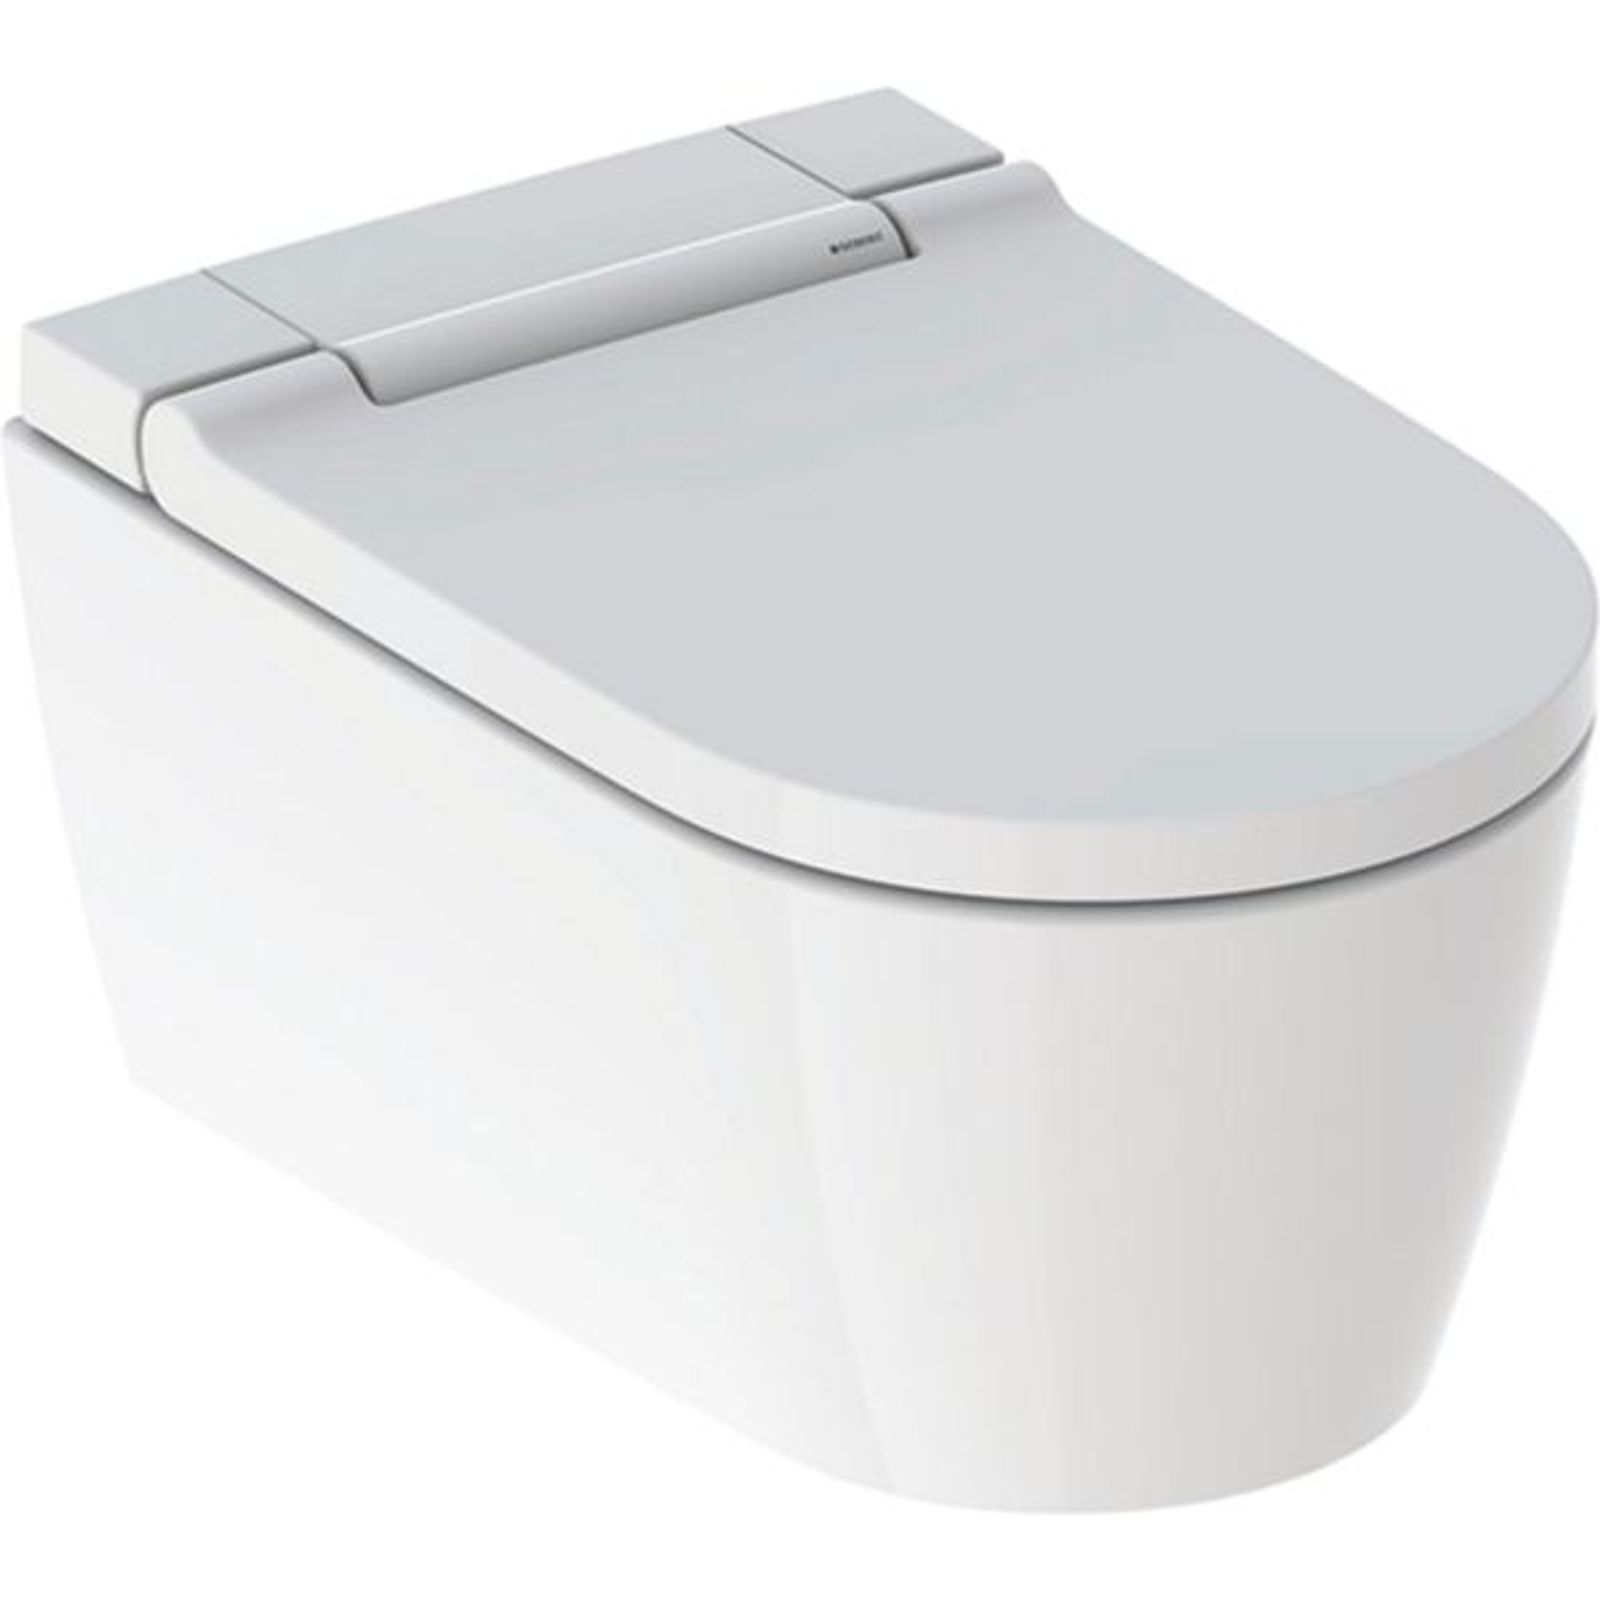 Geberit AquaClean Sela WC-Komplettanlage Wand-WC weiß-alpin